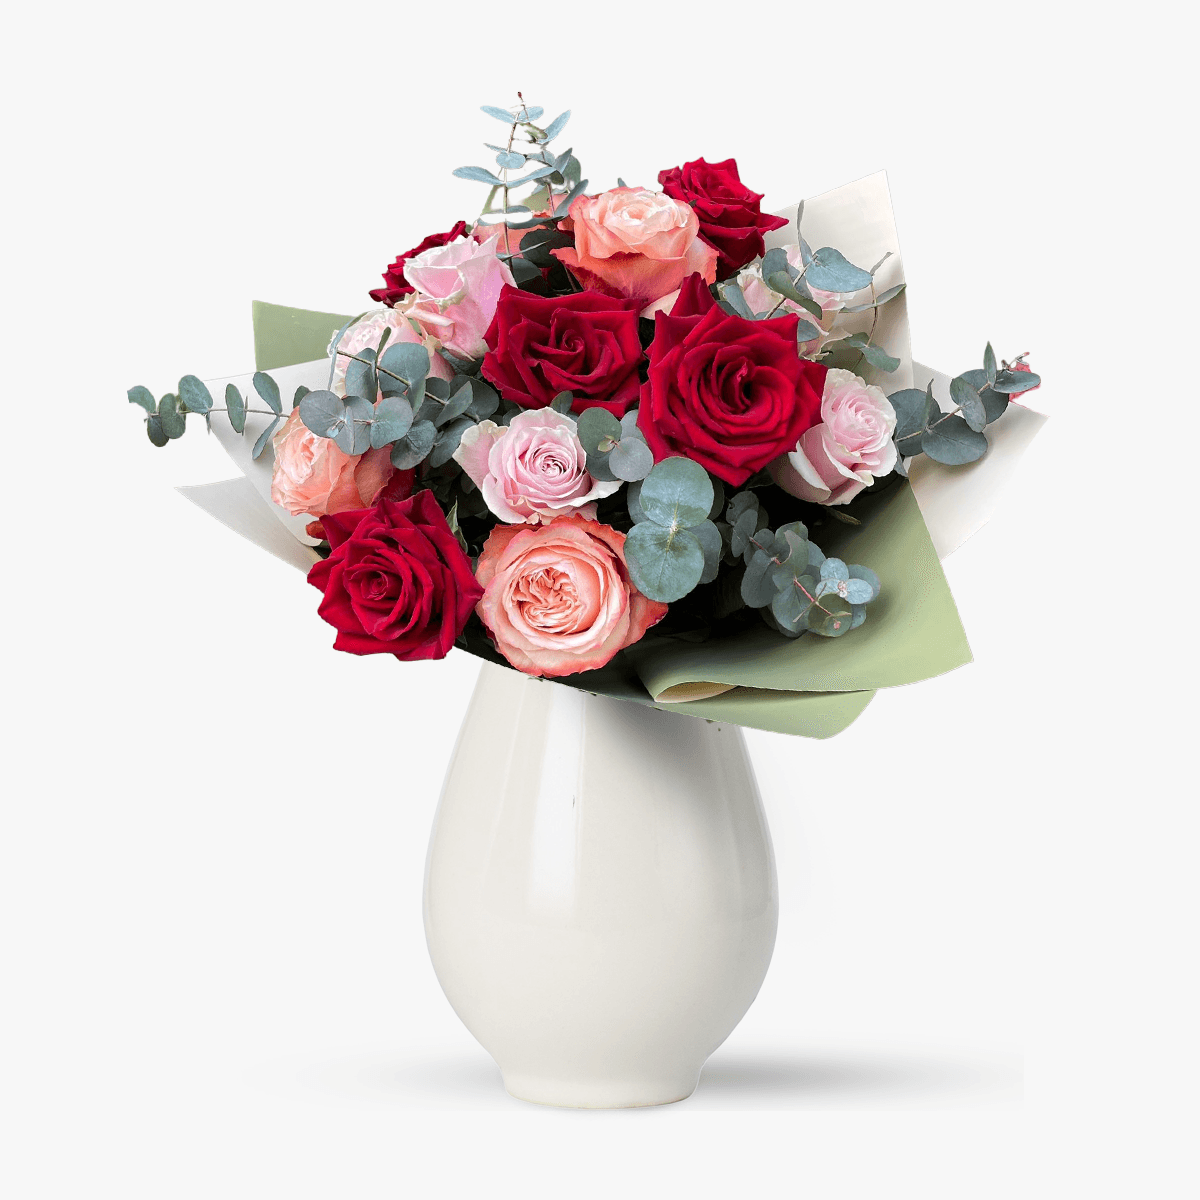 Buchet de 15 trandafiri multicolori – Standard Buchet imagine 2022